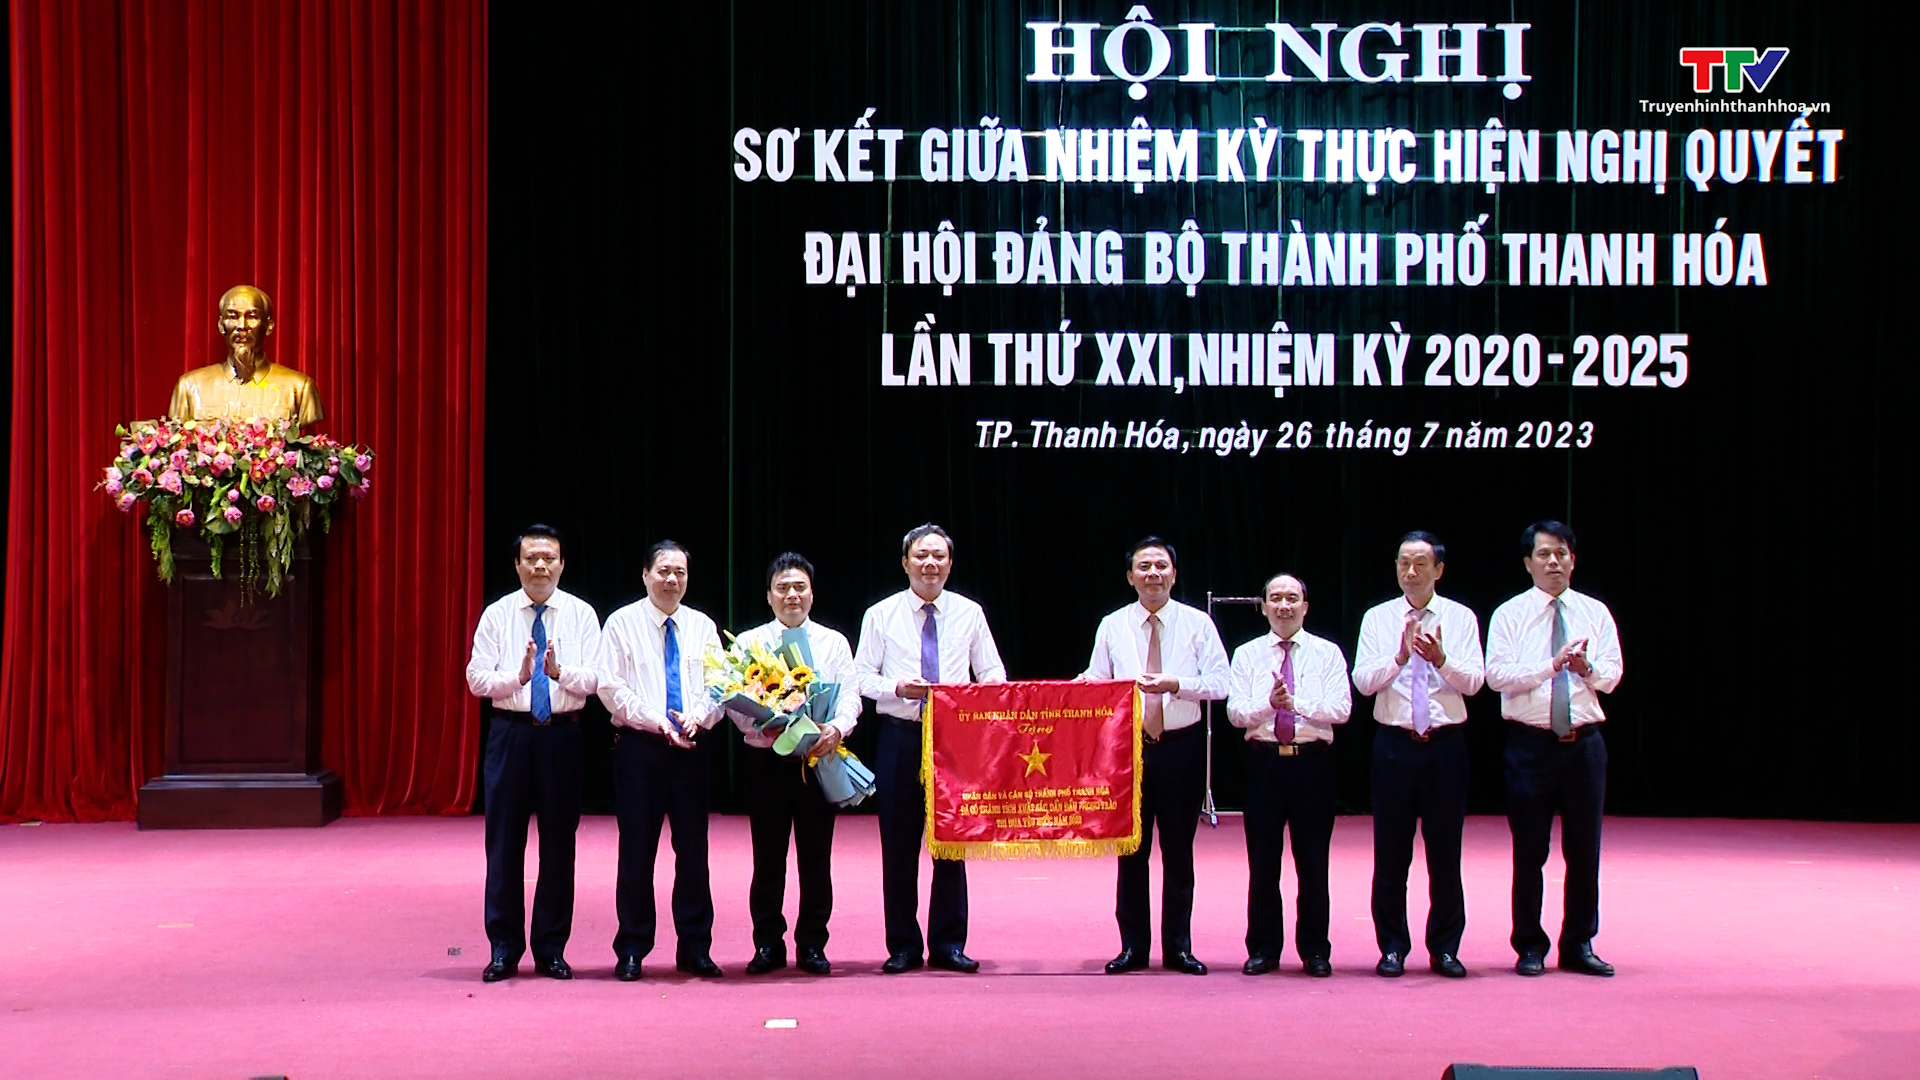 Đảng bộ thành phố Thanh Hóa sơ kết giữa nhiệm kỳ 2020 - 2025 - Ảnh 10.